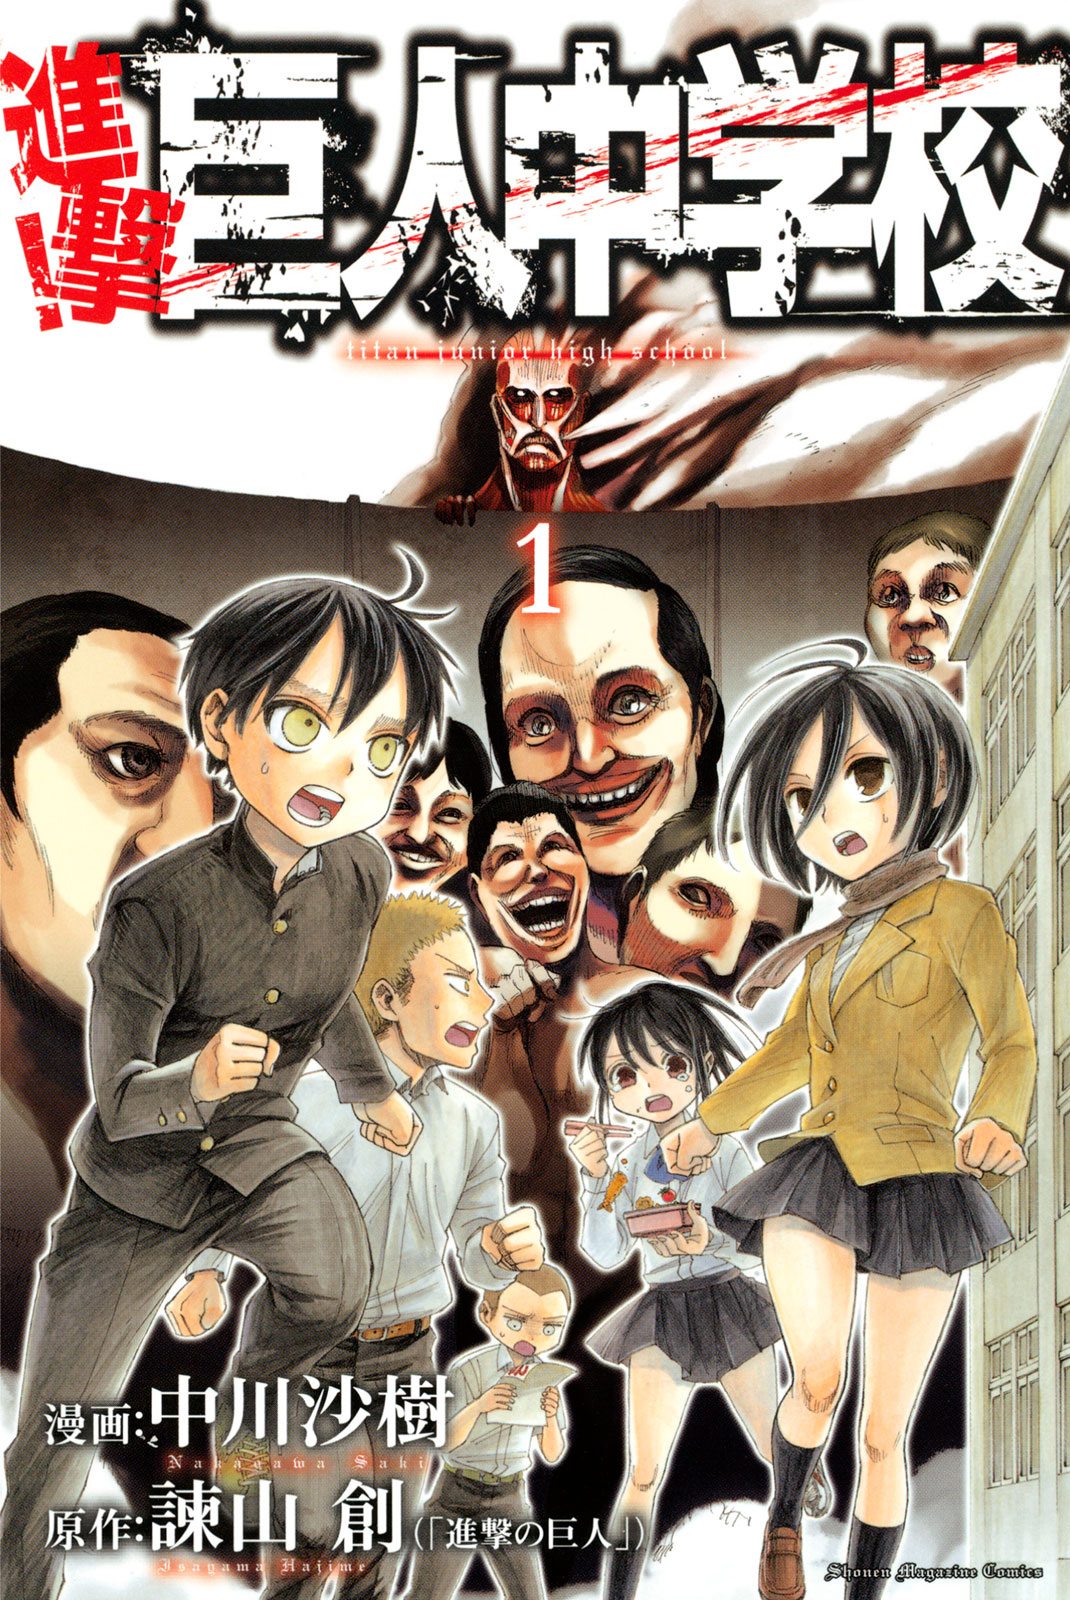 download manga shingeki no kyojin english